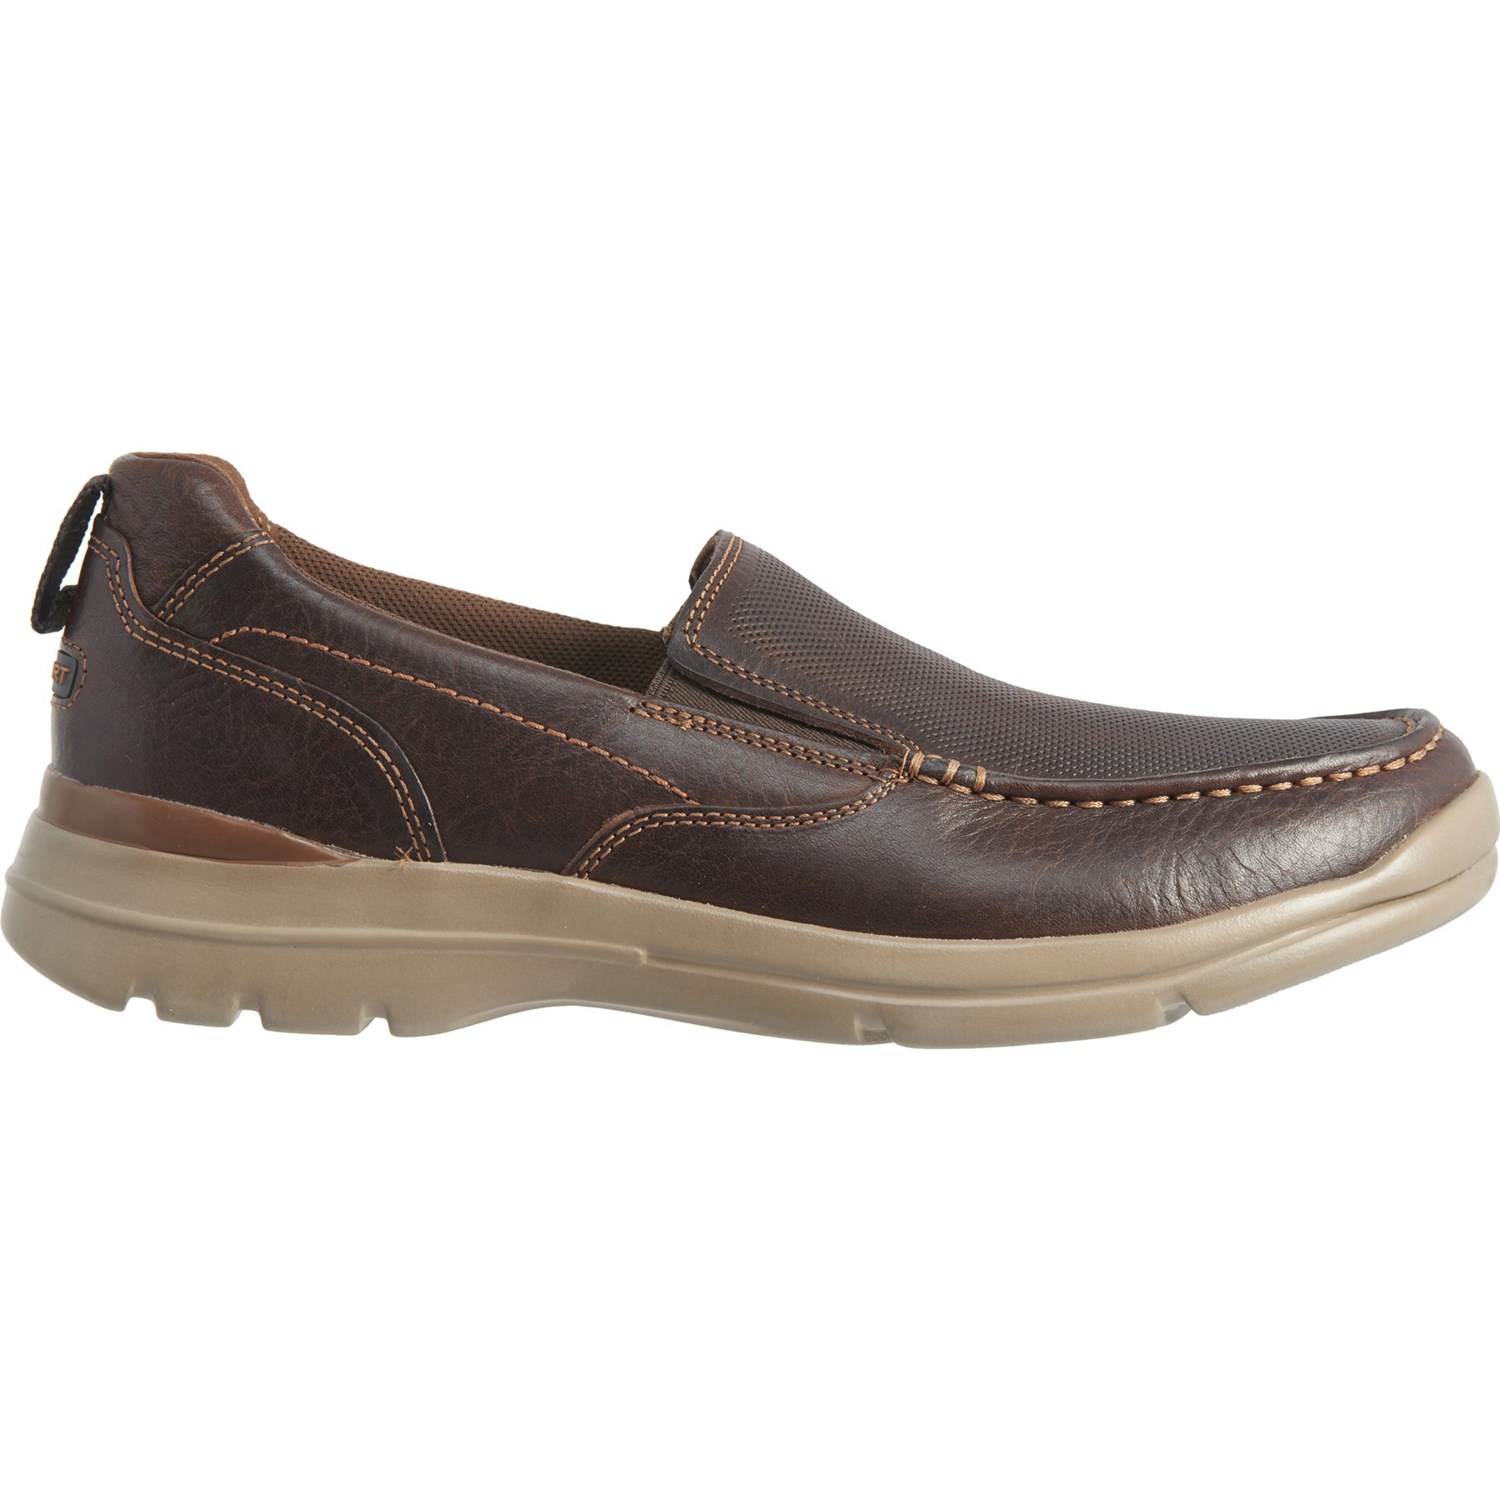 Rockport Bison City Edge Shoes (For Men) - Save 75%